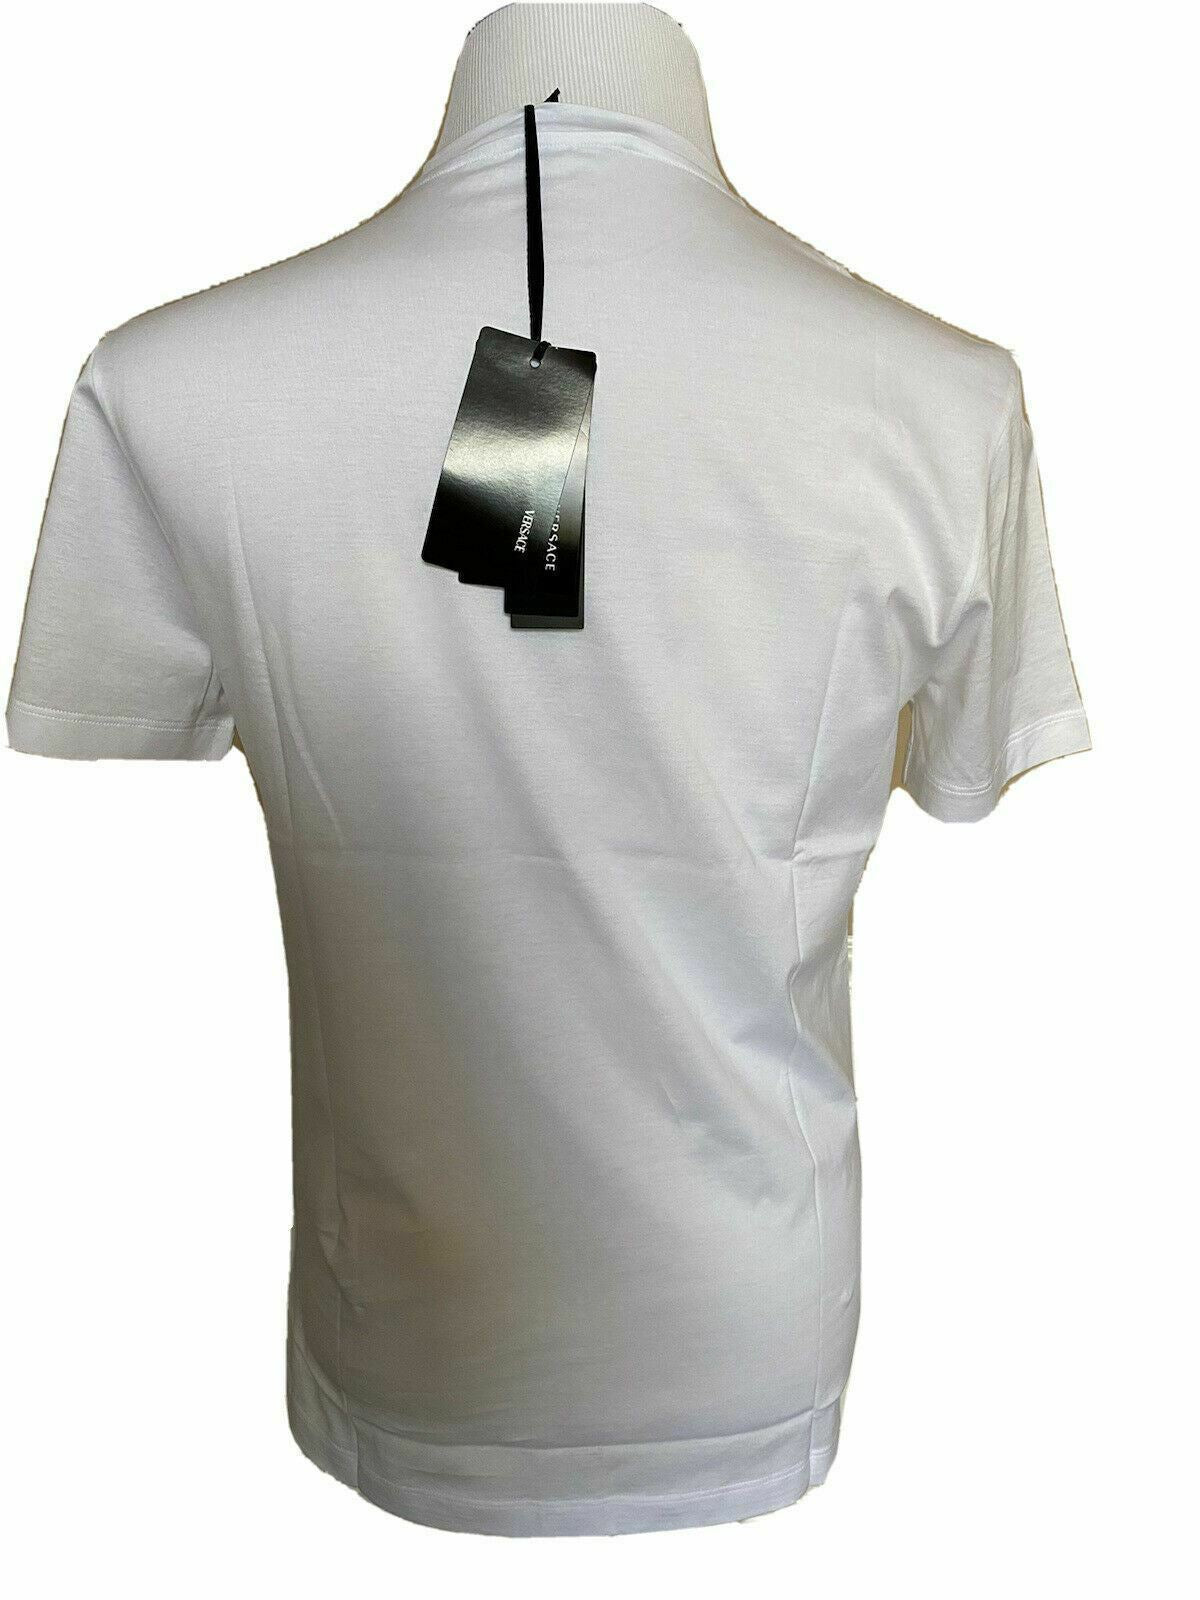 Neu mit Etikett: 450 $ Versace I Love NY Print Weißes T-Shirt 4XL Hergestellt in Italien A84109 